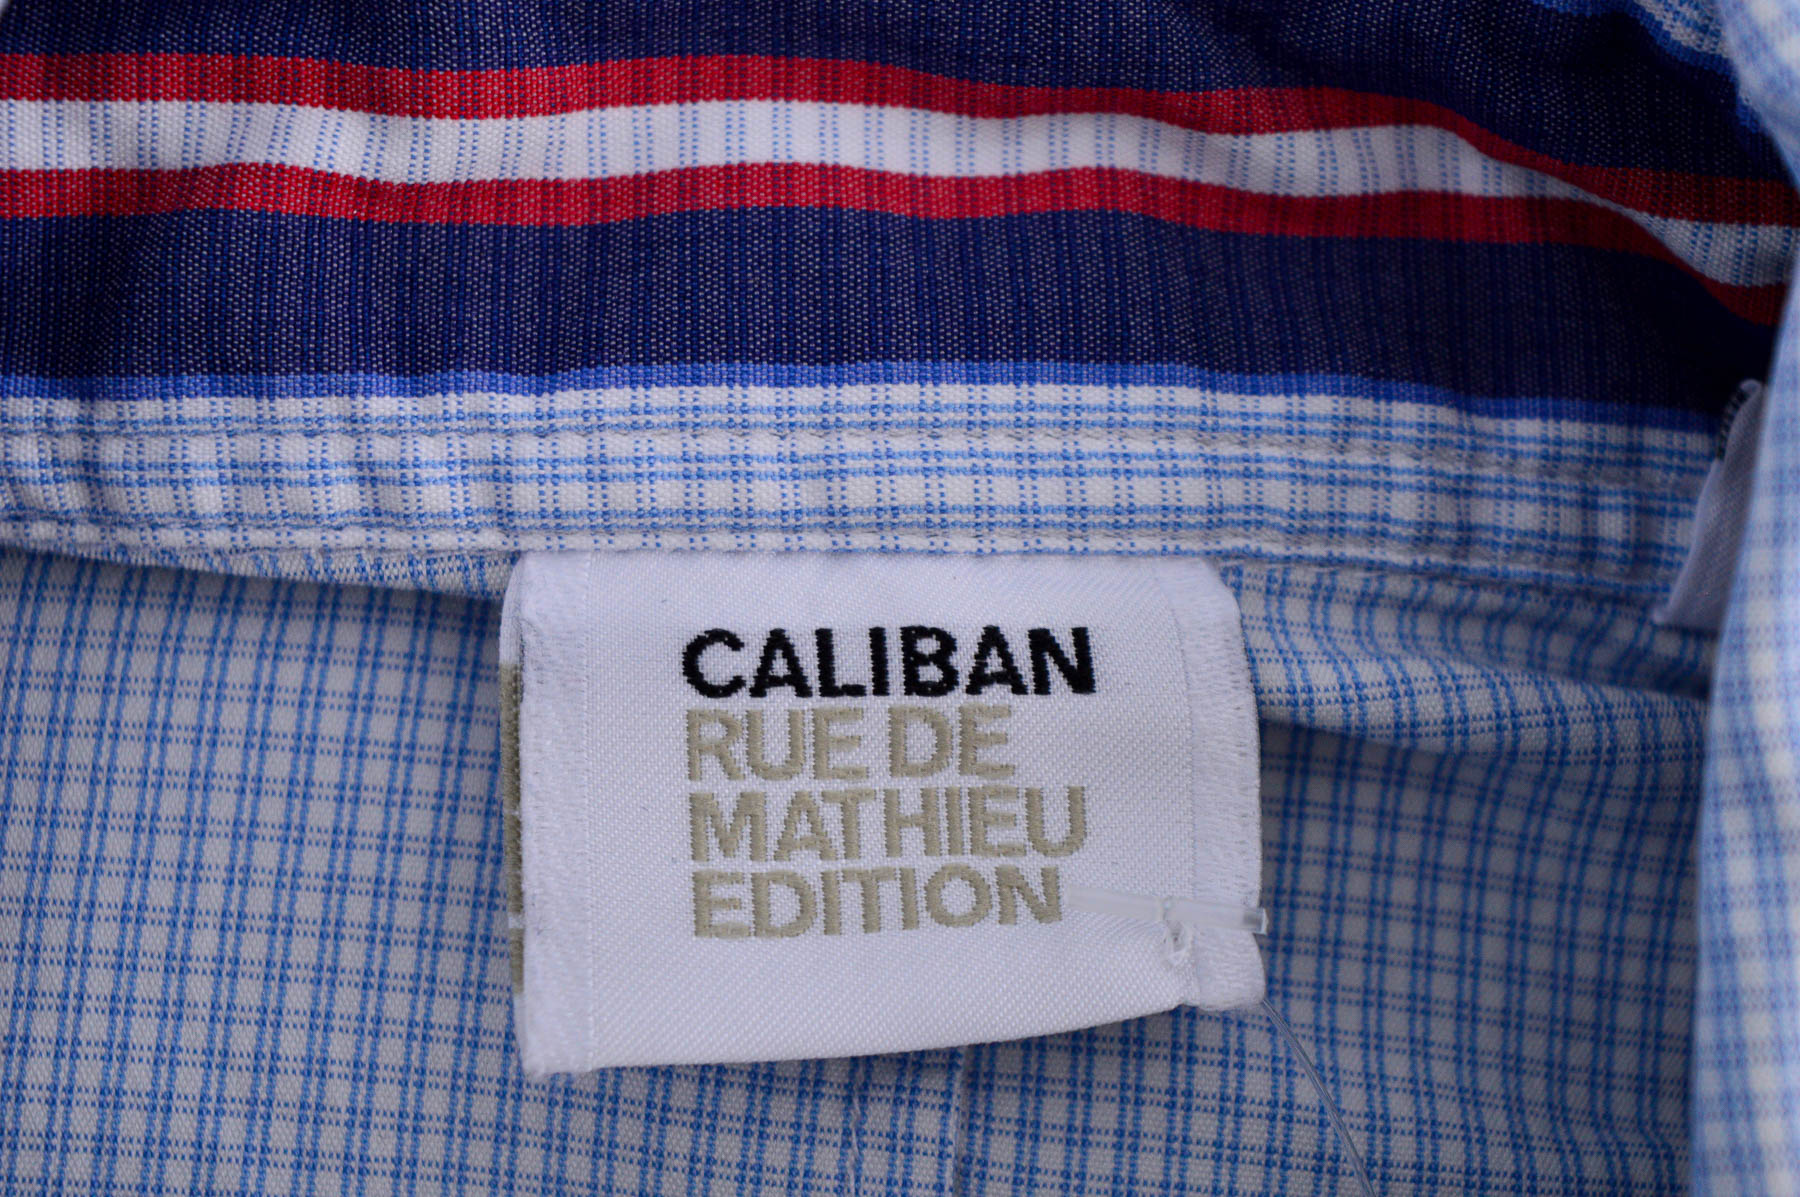 Γυναικείо πουκάμισο - Caliban Rue DE Mathieu Edition - 2